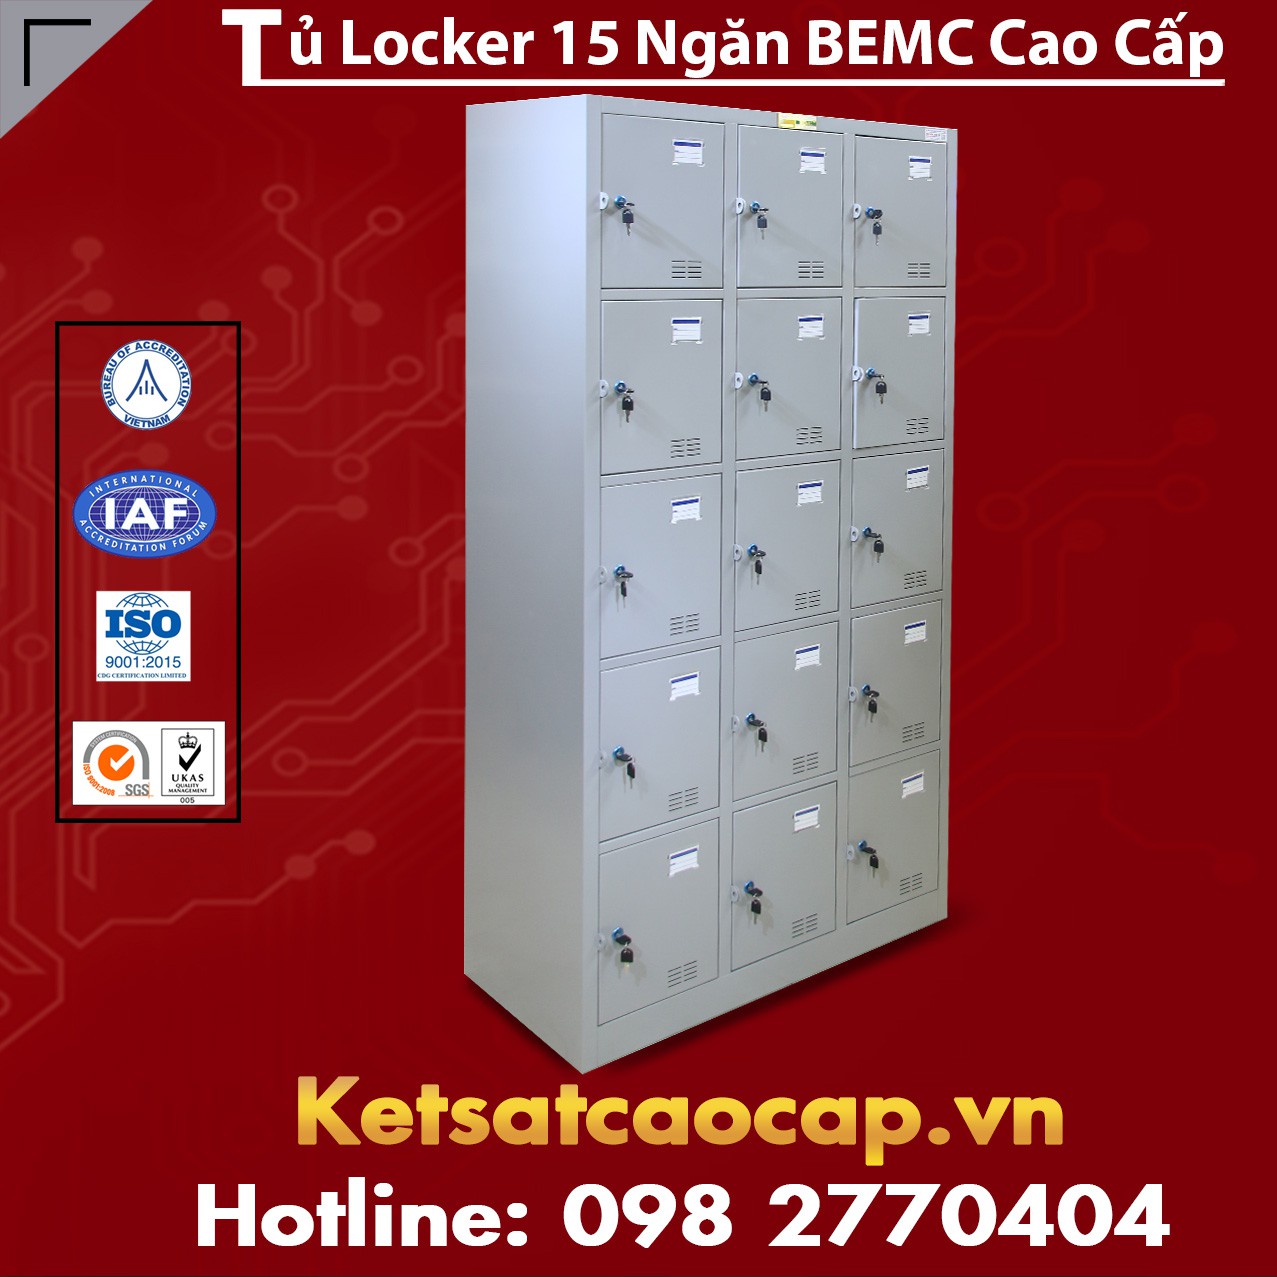 Locker & Lock Chuyen Cung Cap Tu Locker Khoa Tai 63 Tinh Thanh